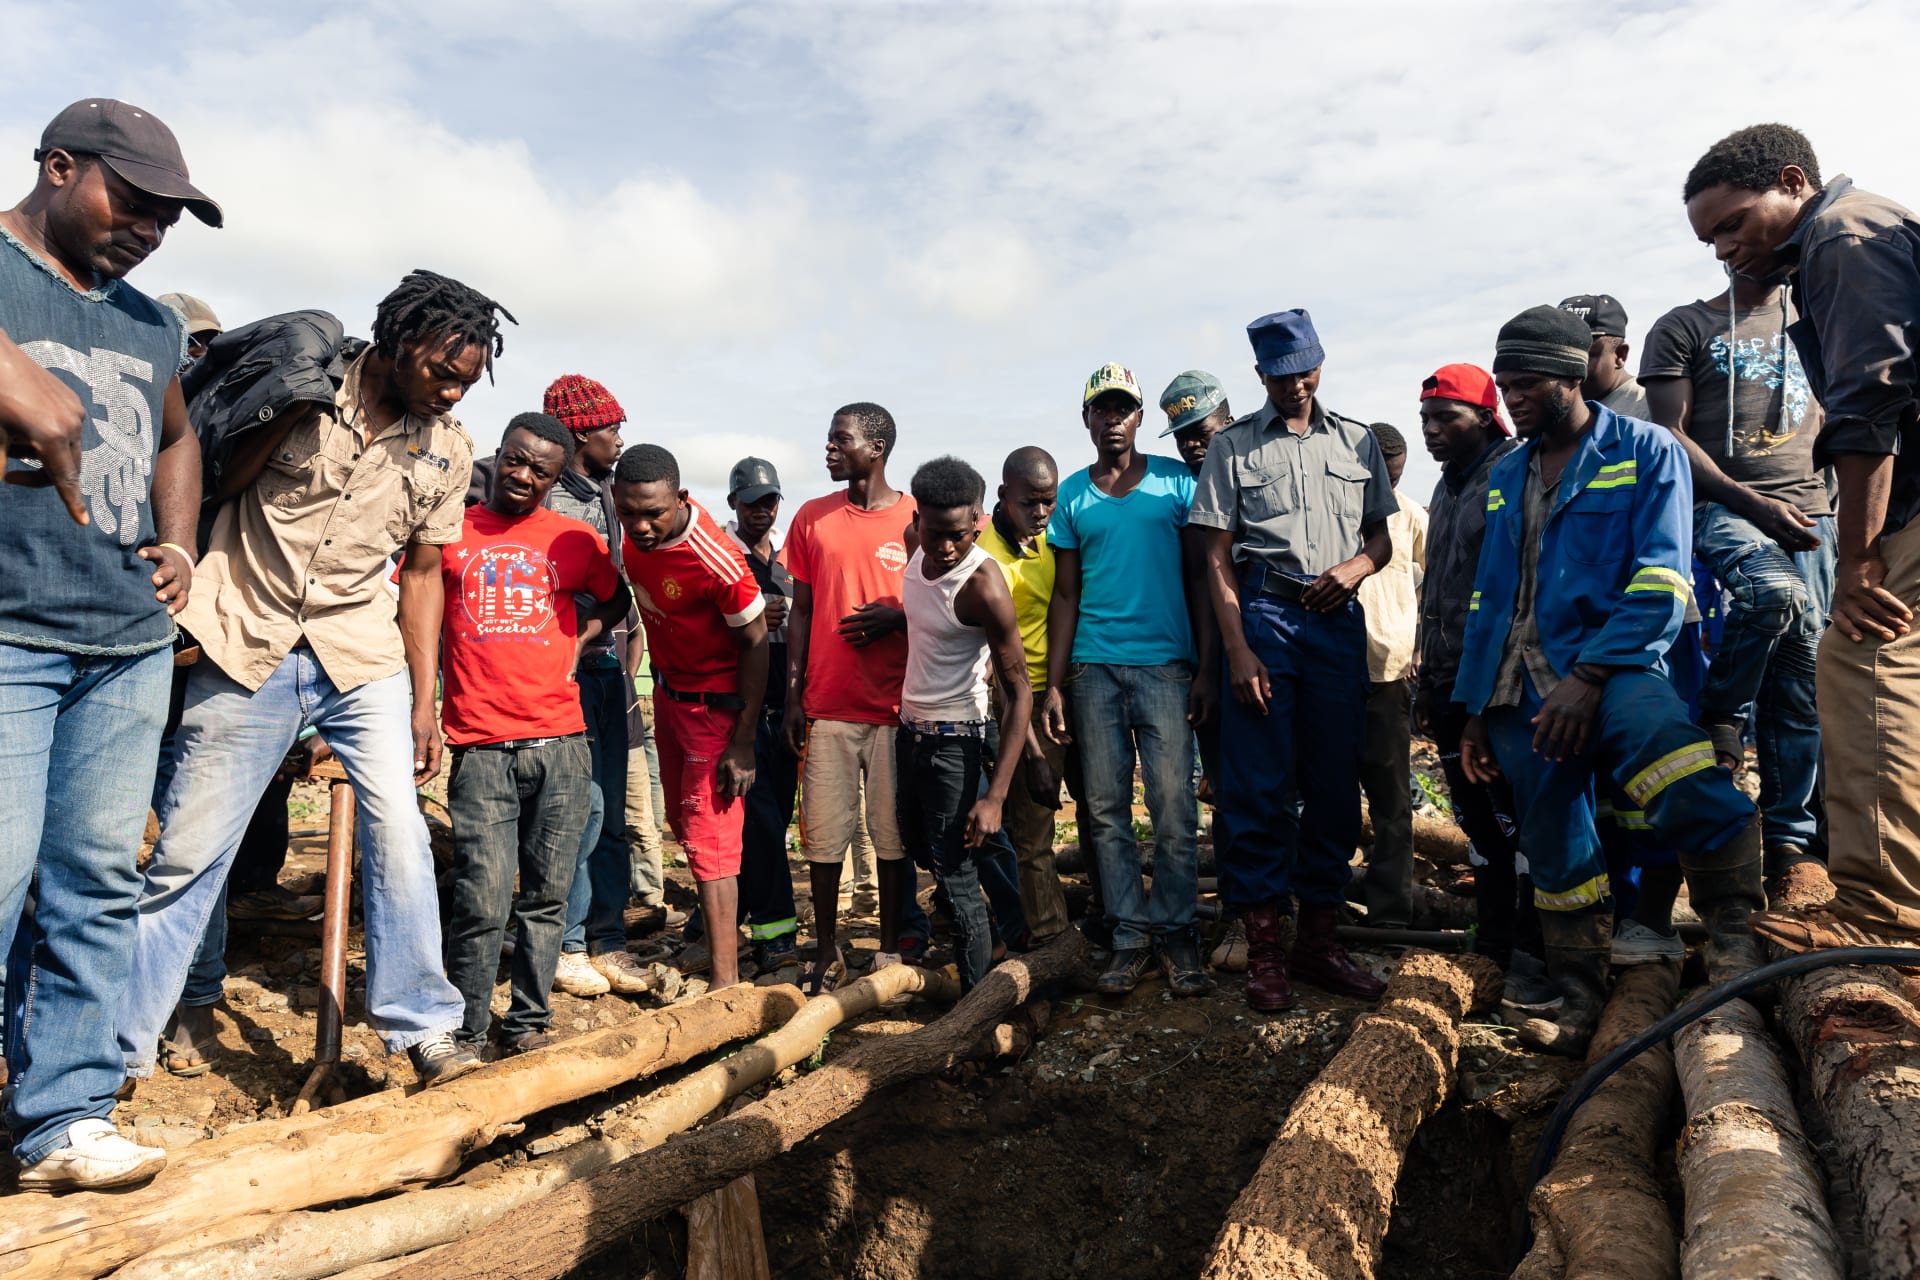 زيمبابوي.. منظمة: إطلاق صاحب مناجم صيني النار على عمال تعدين إساءة "منهجية"